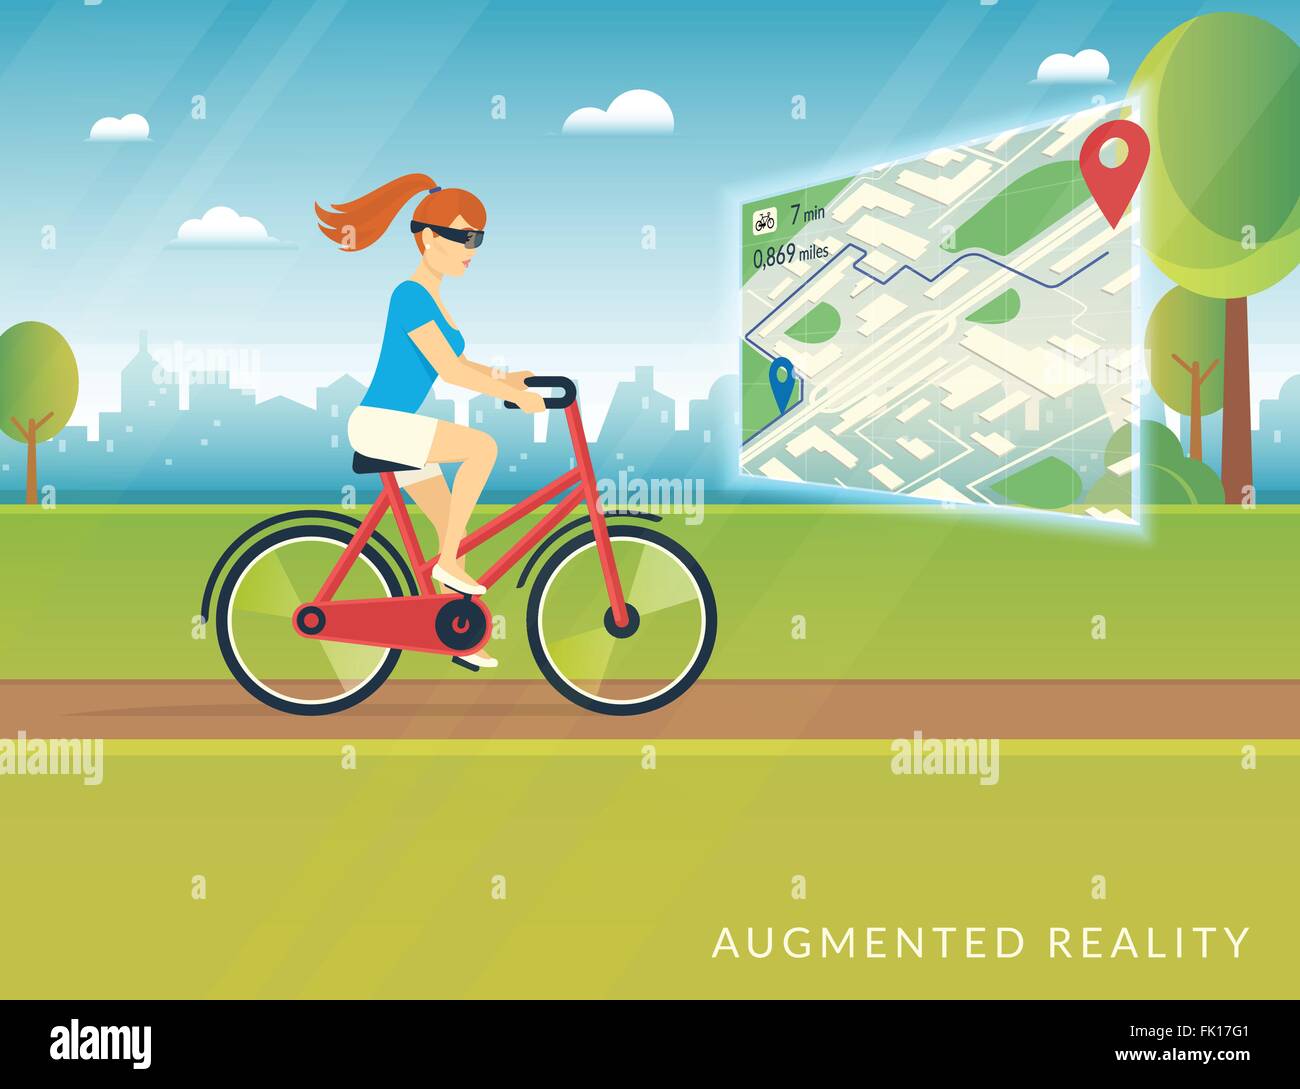 Young woman riding a bike et voyant sur la piste cyclable de réalité augmentée mobile site Illustration de Vecteur